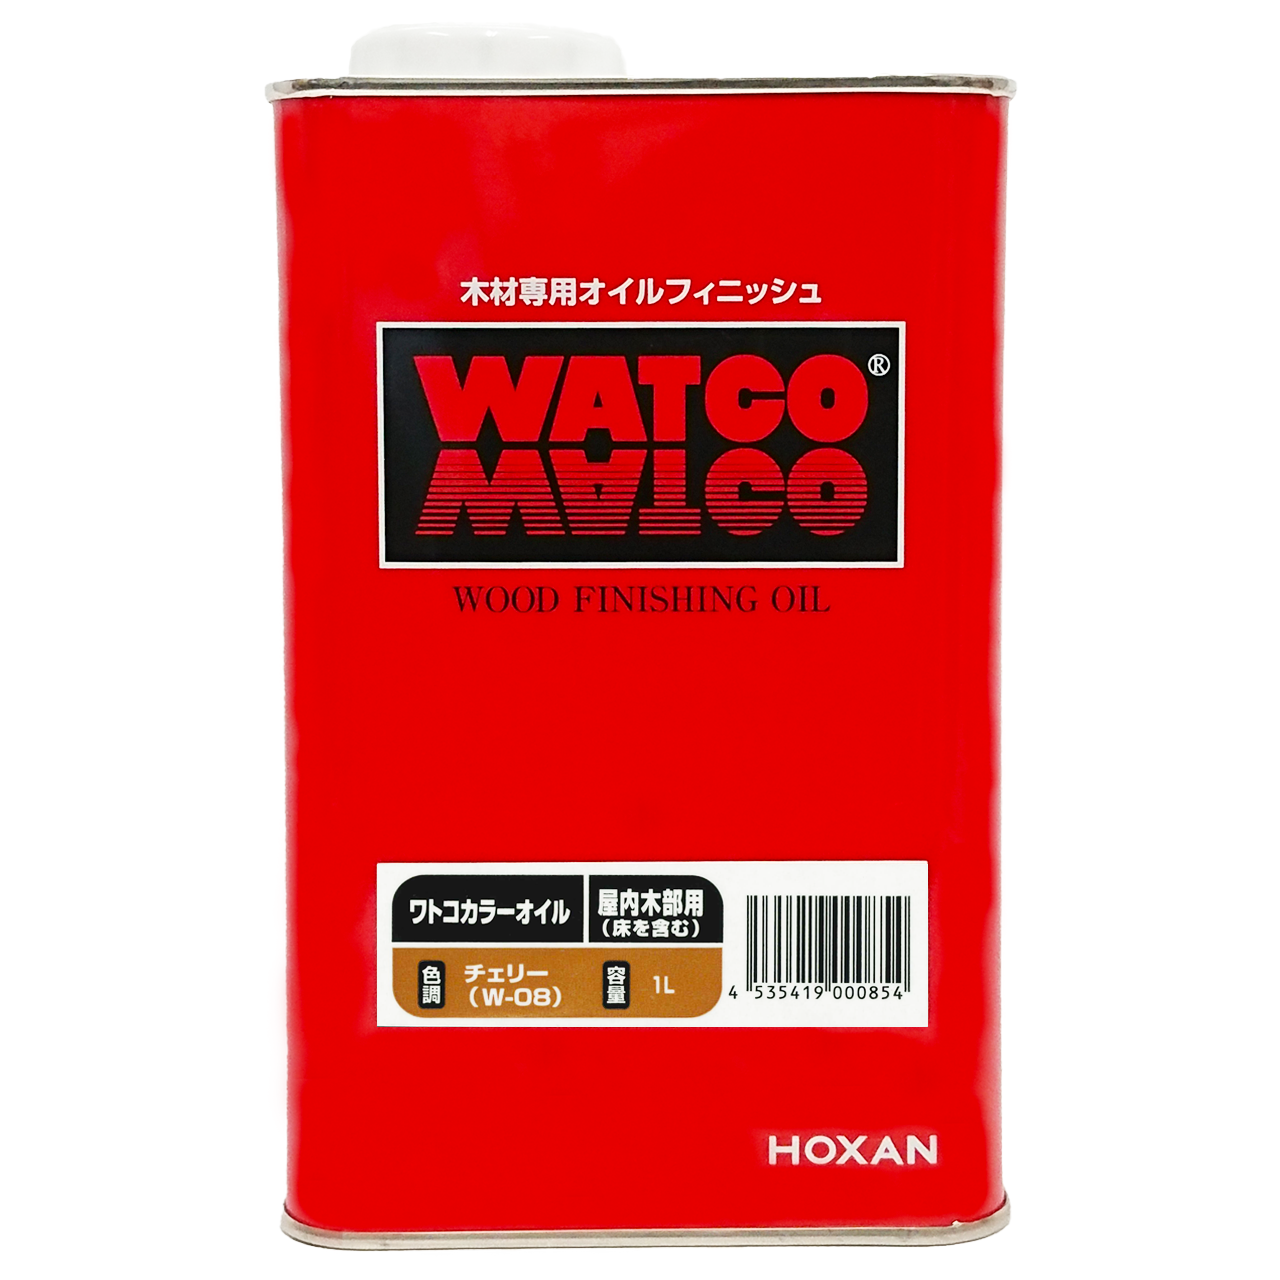 WATCO(ワトコ) ワトコオイル 3.6L チェリー(W08)